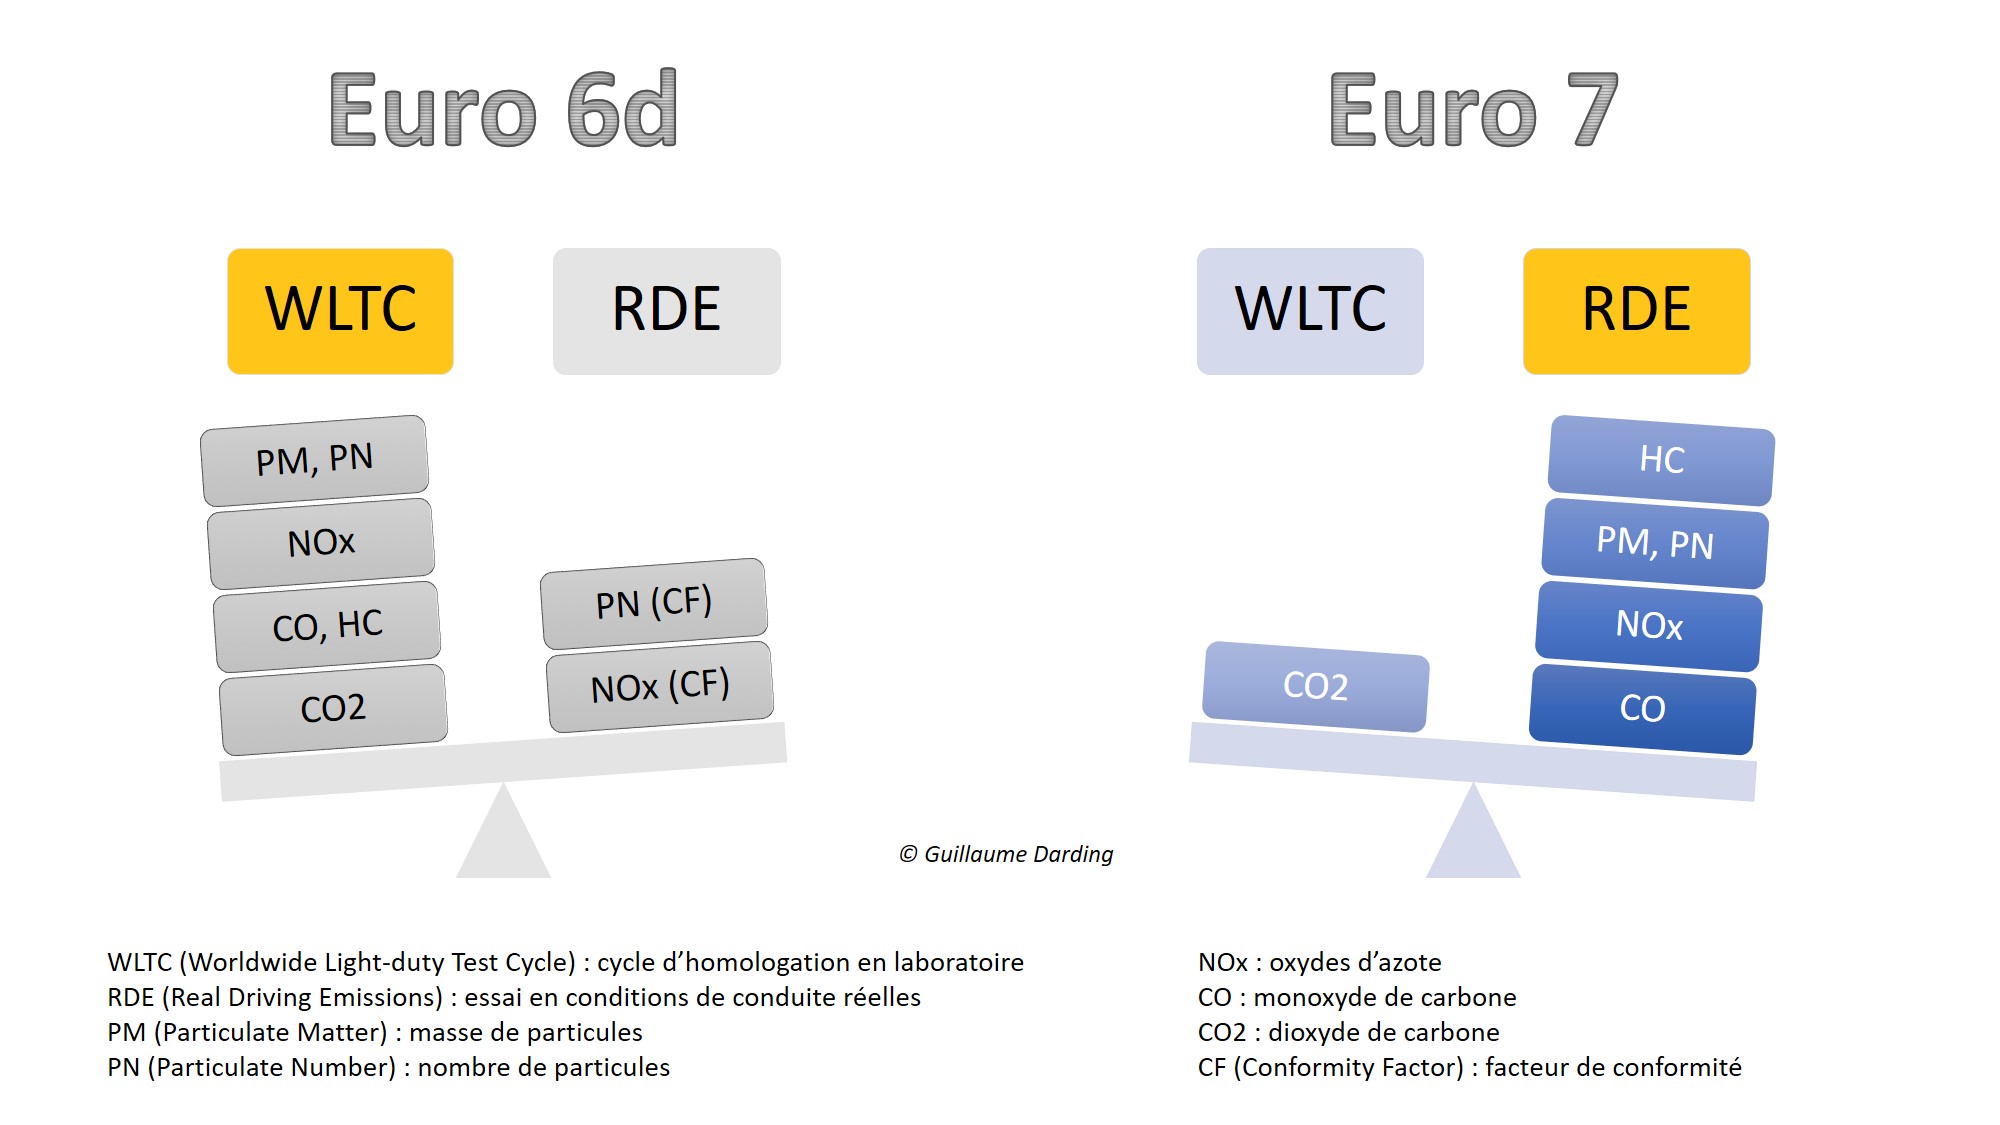 Comparaison essai en laboratoire / essai sur route Euro 6 et Euro 7